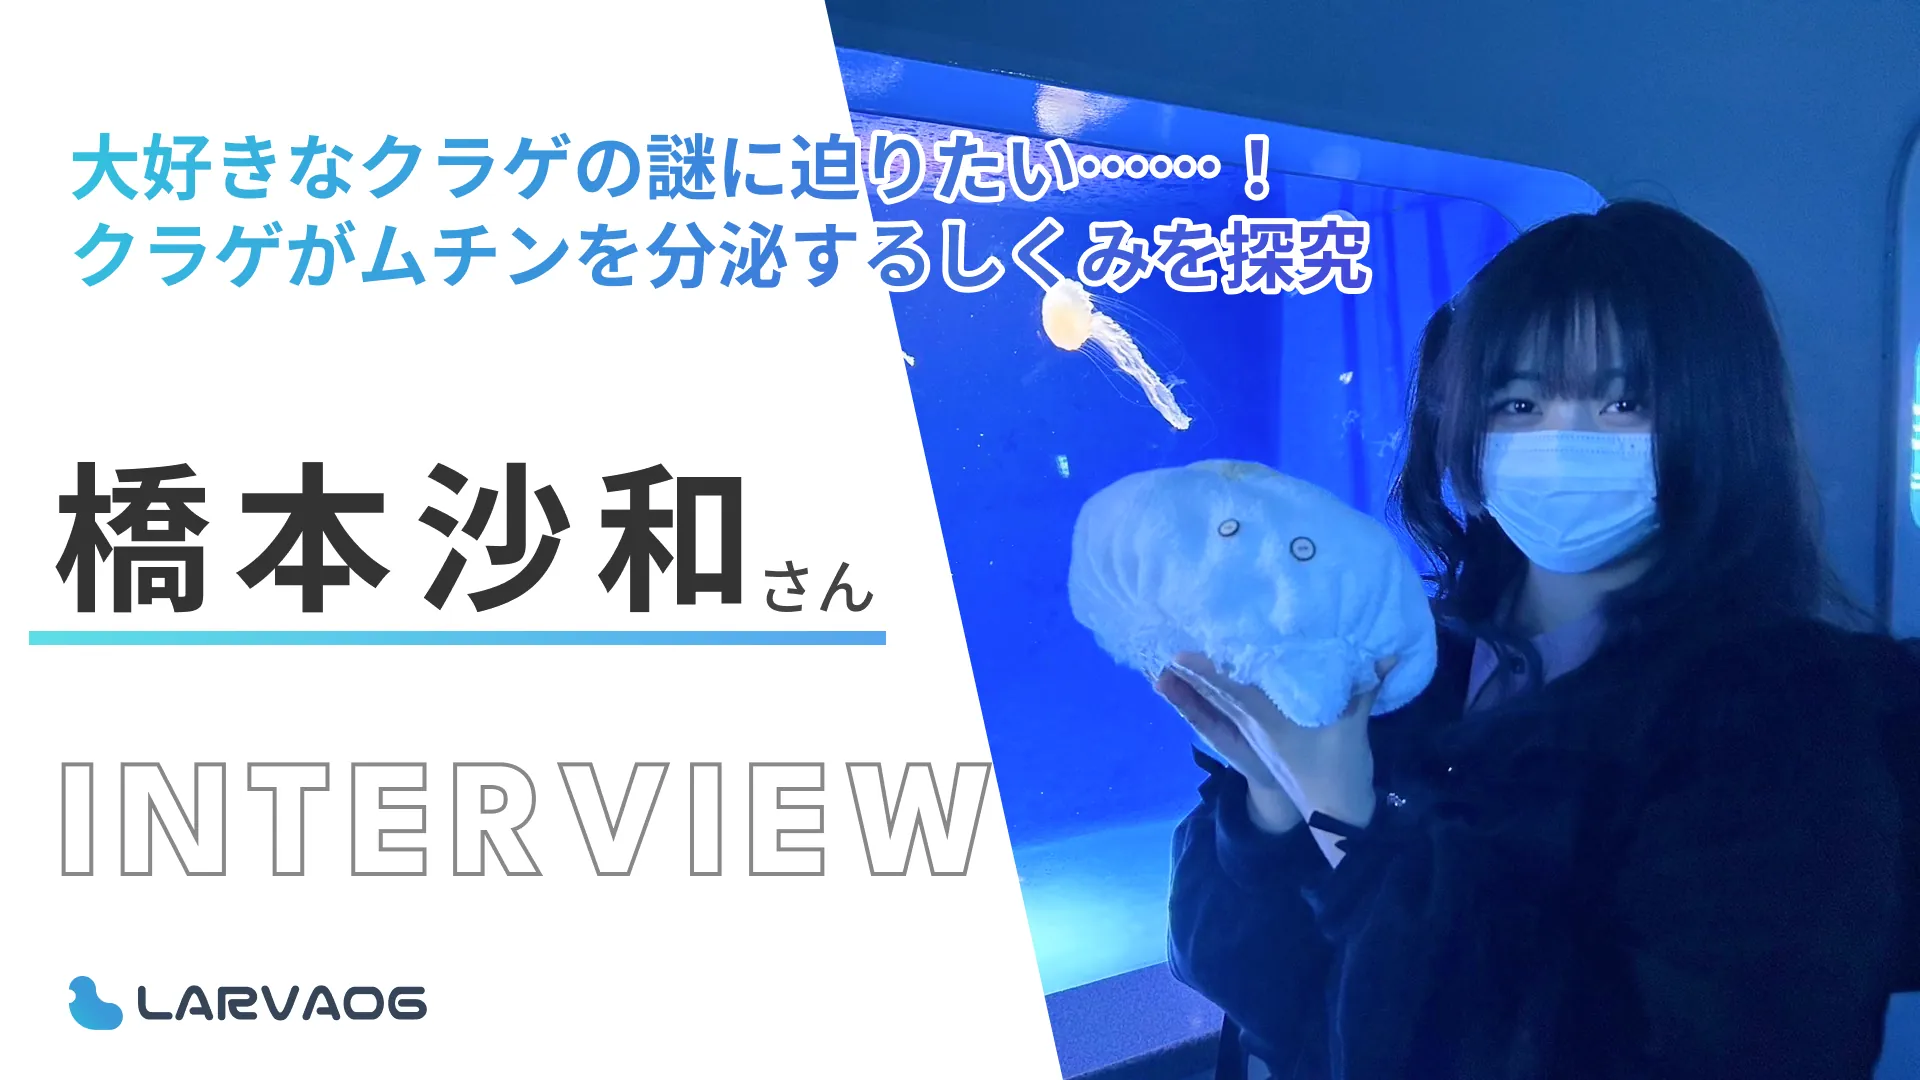 大好きなクラゲがムチンを分泌するしくみを解明したい……！橋本沙和さん研究インタビュー